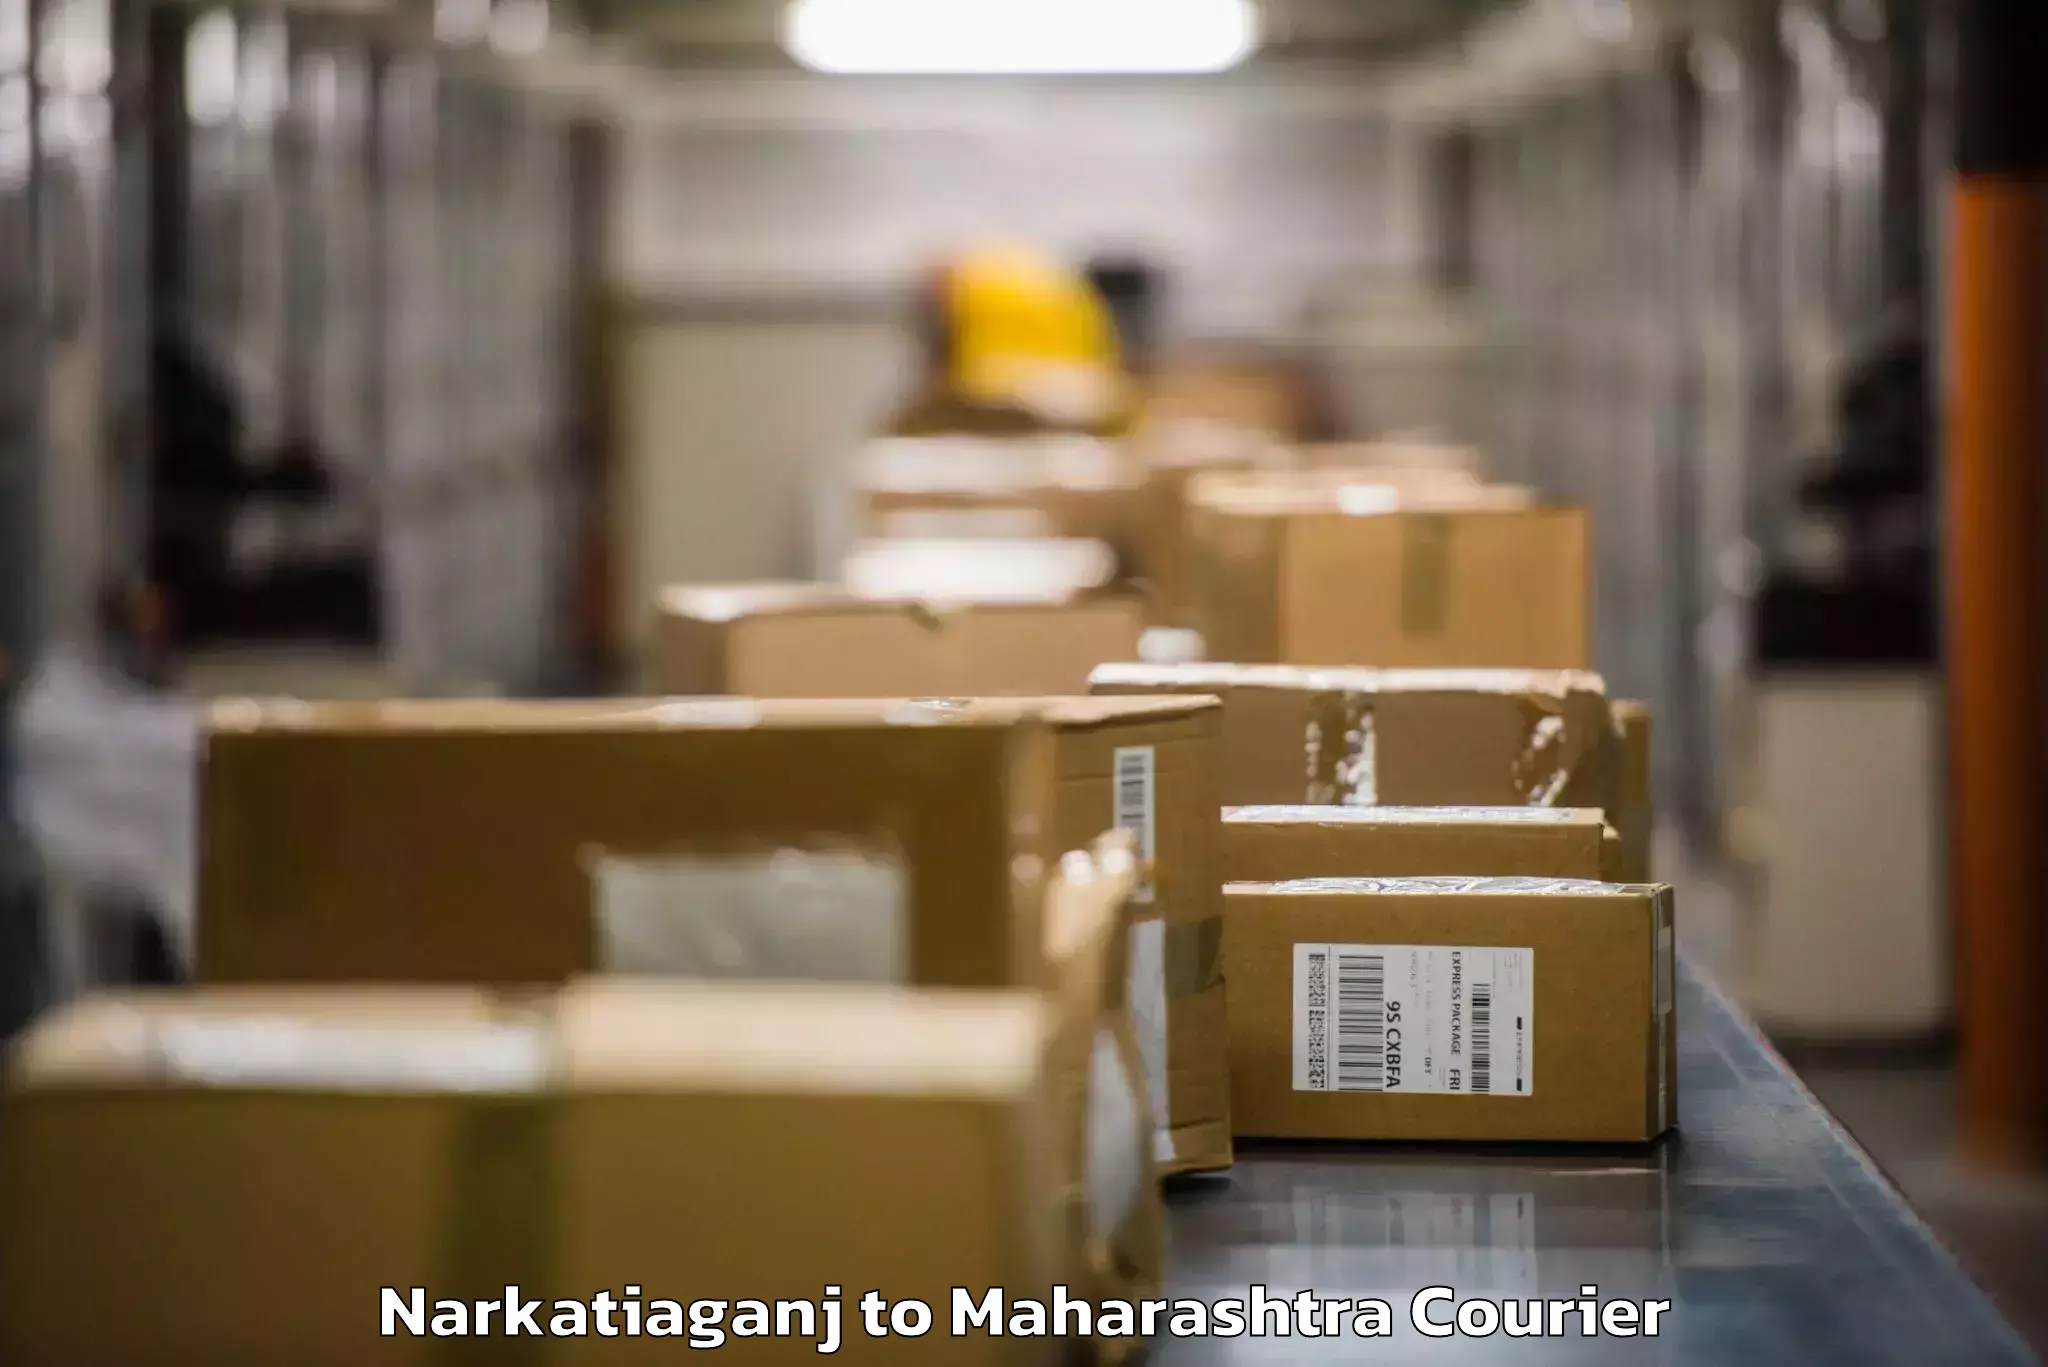 Baggage shipping experts Narkatiaganj to Talasari